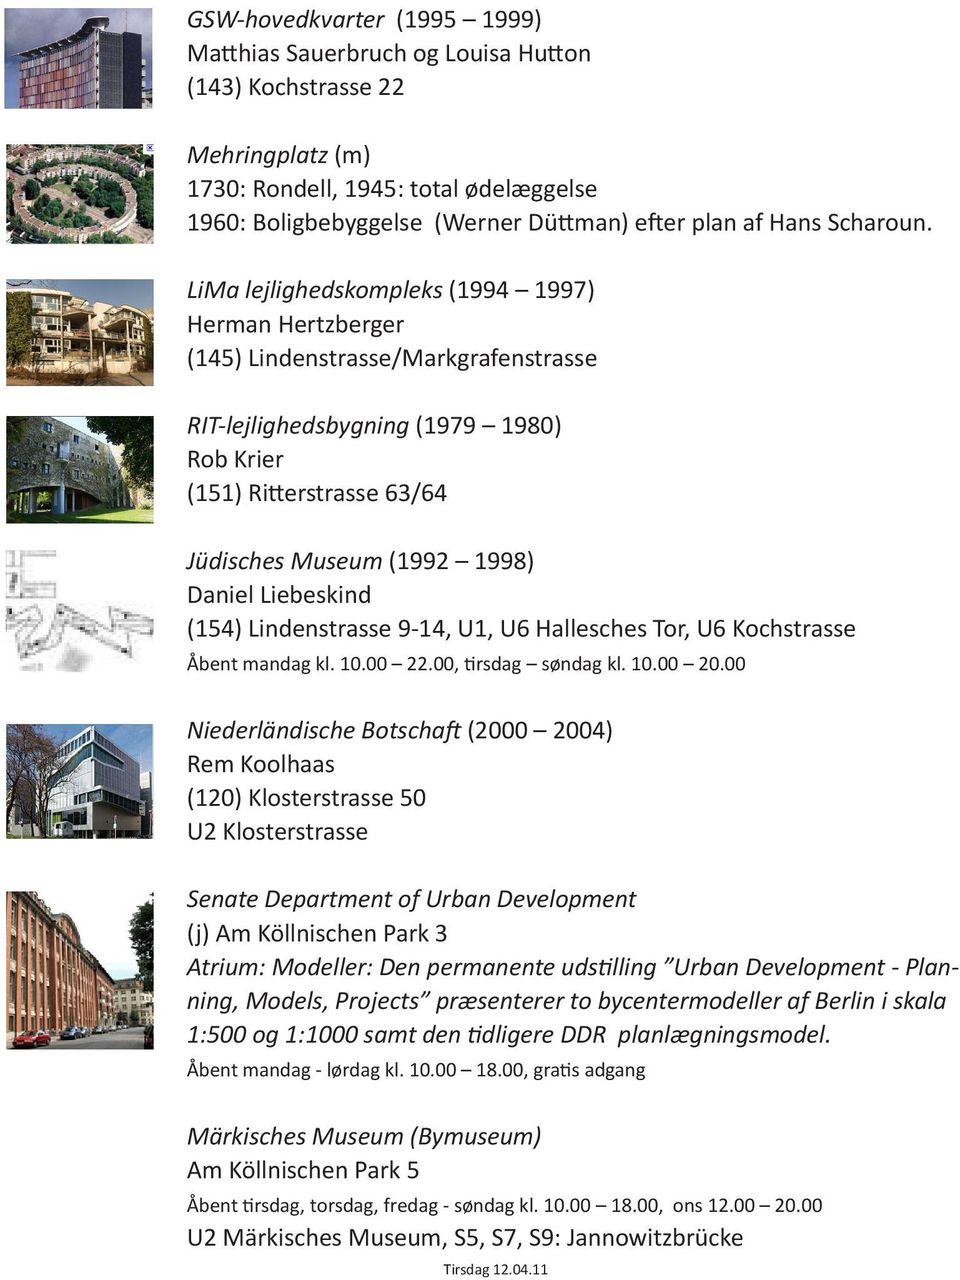 LiMa lejlighedskompleks (1994 1997) Herman Hertzberger (145) Lindenstrasse/Markgrafenstrasse RIT-lejlighedsbygning (1979 1980) Rob Krier (151) Ritterstrasse 63/64 Jüdisches Museum (1992 1998) Daniel